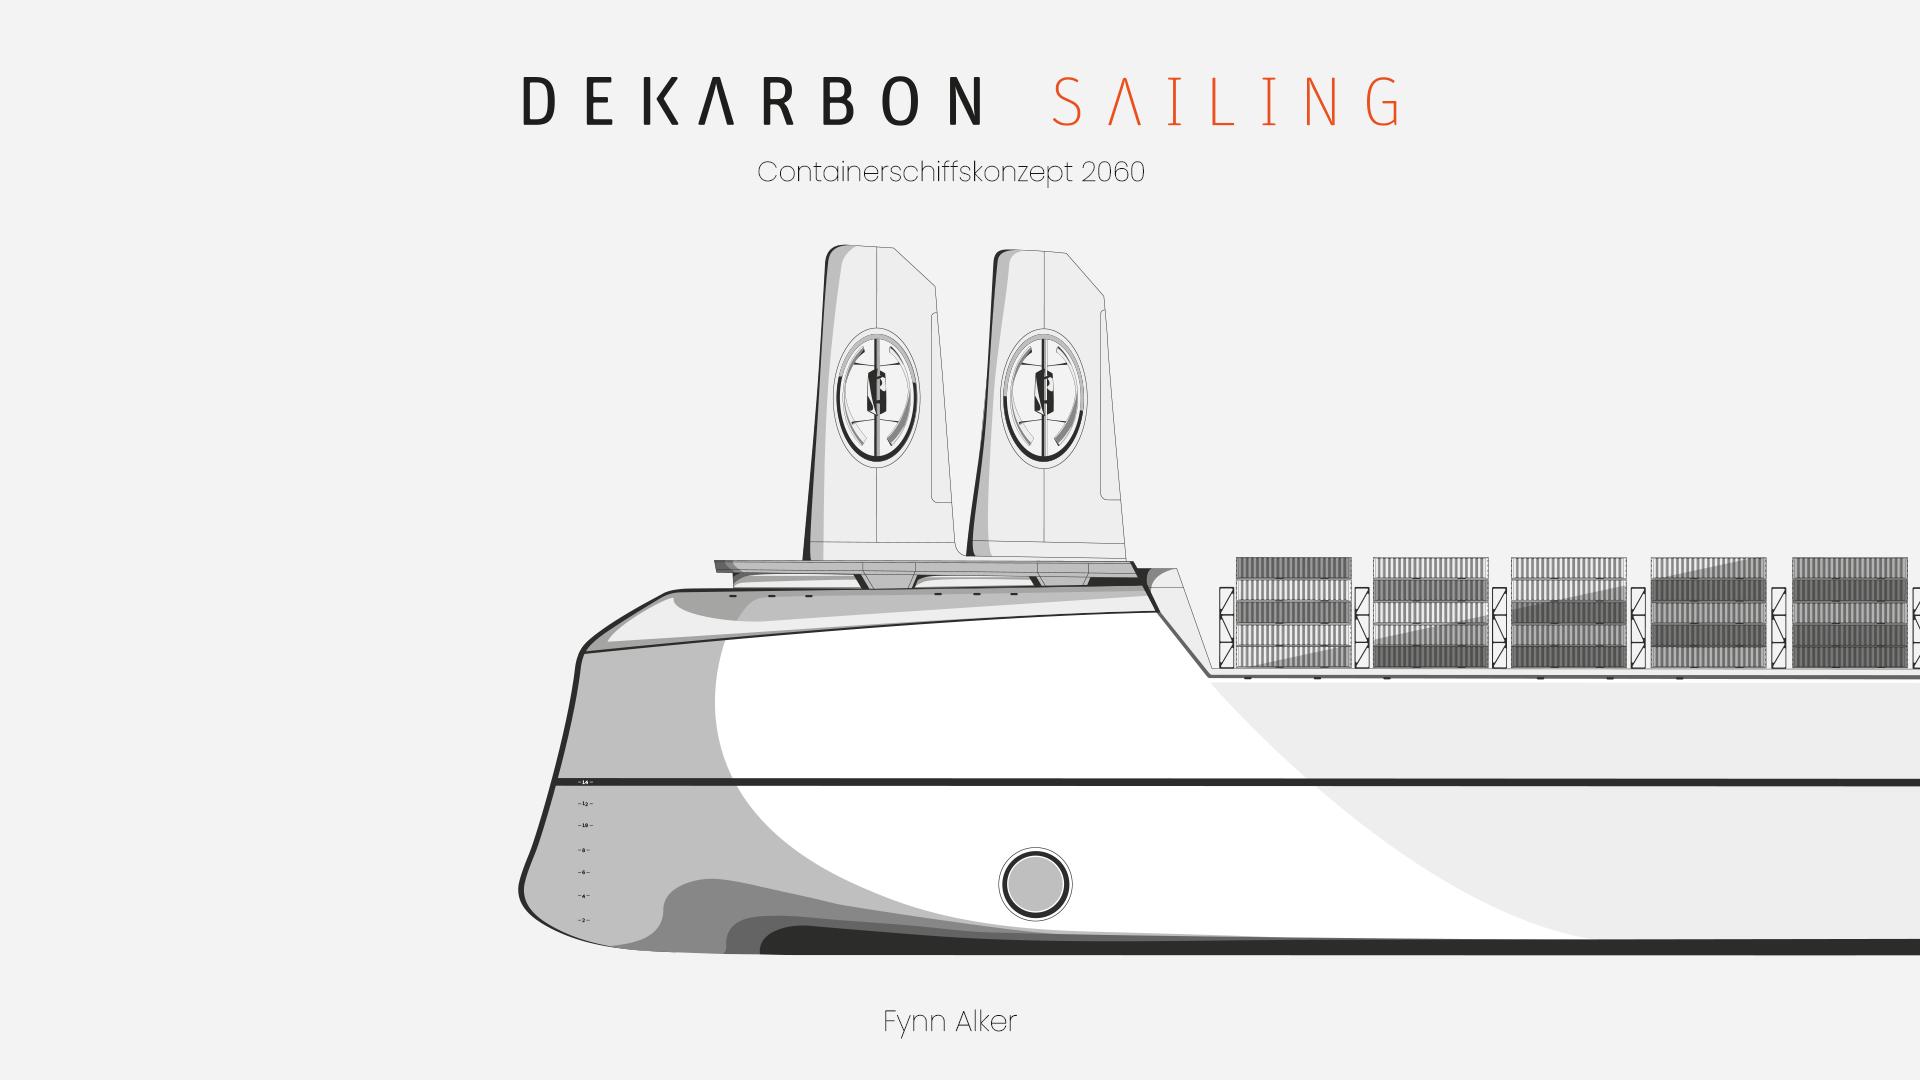 Dekarbon Sailing – Klimaneutraler Überseetransport / Dekarbon Sailing – Climate neutral ocean shipments